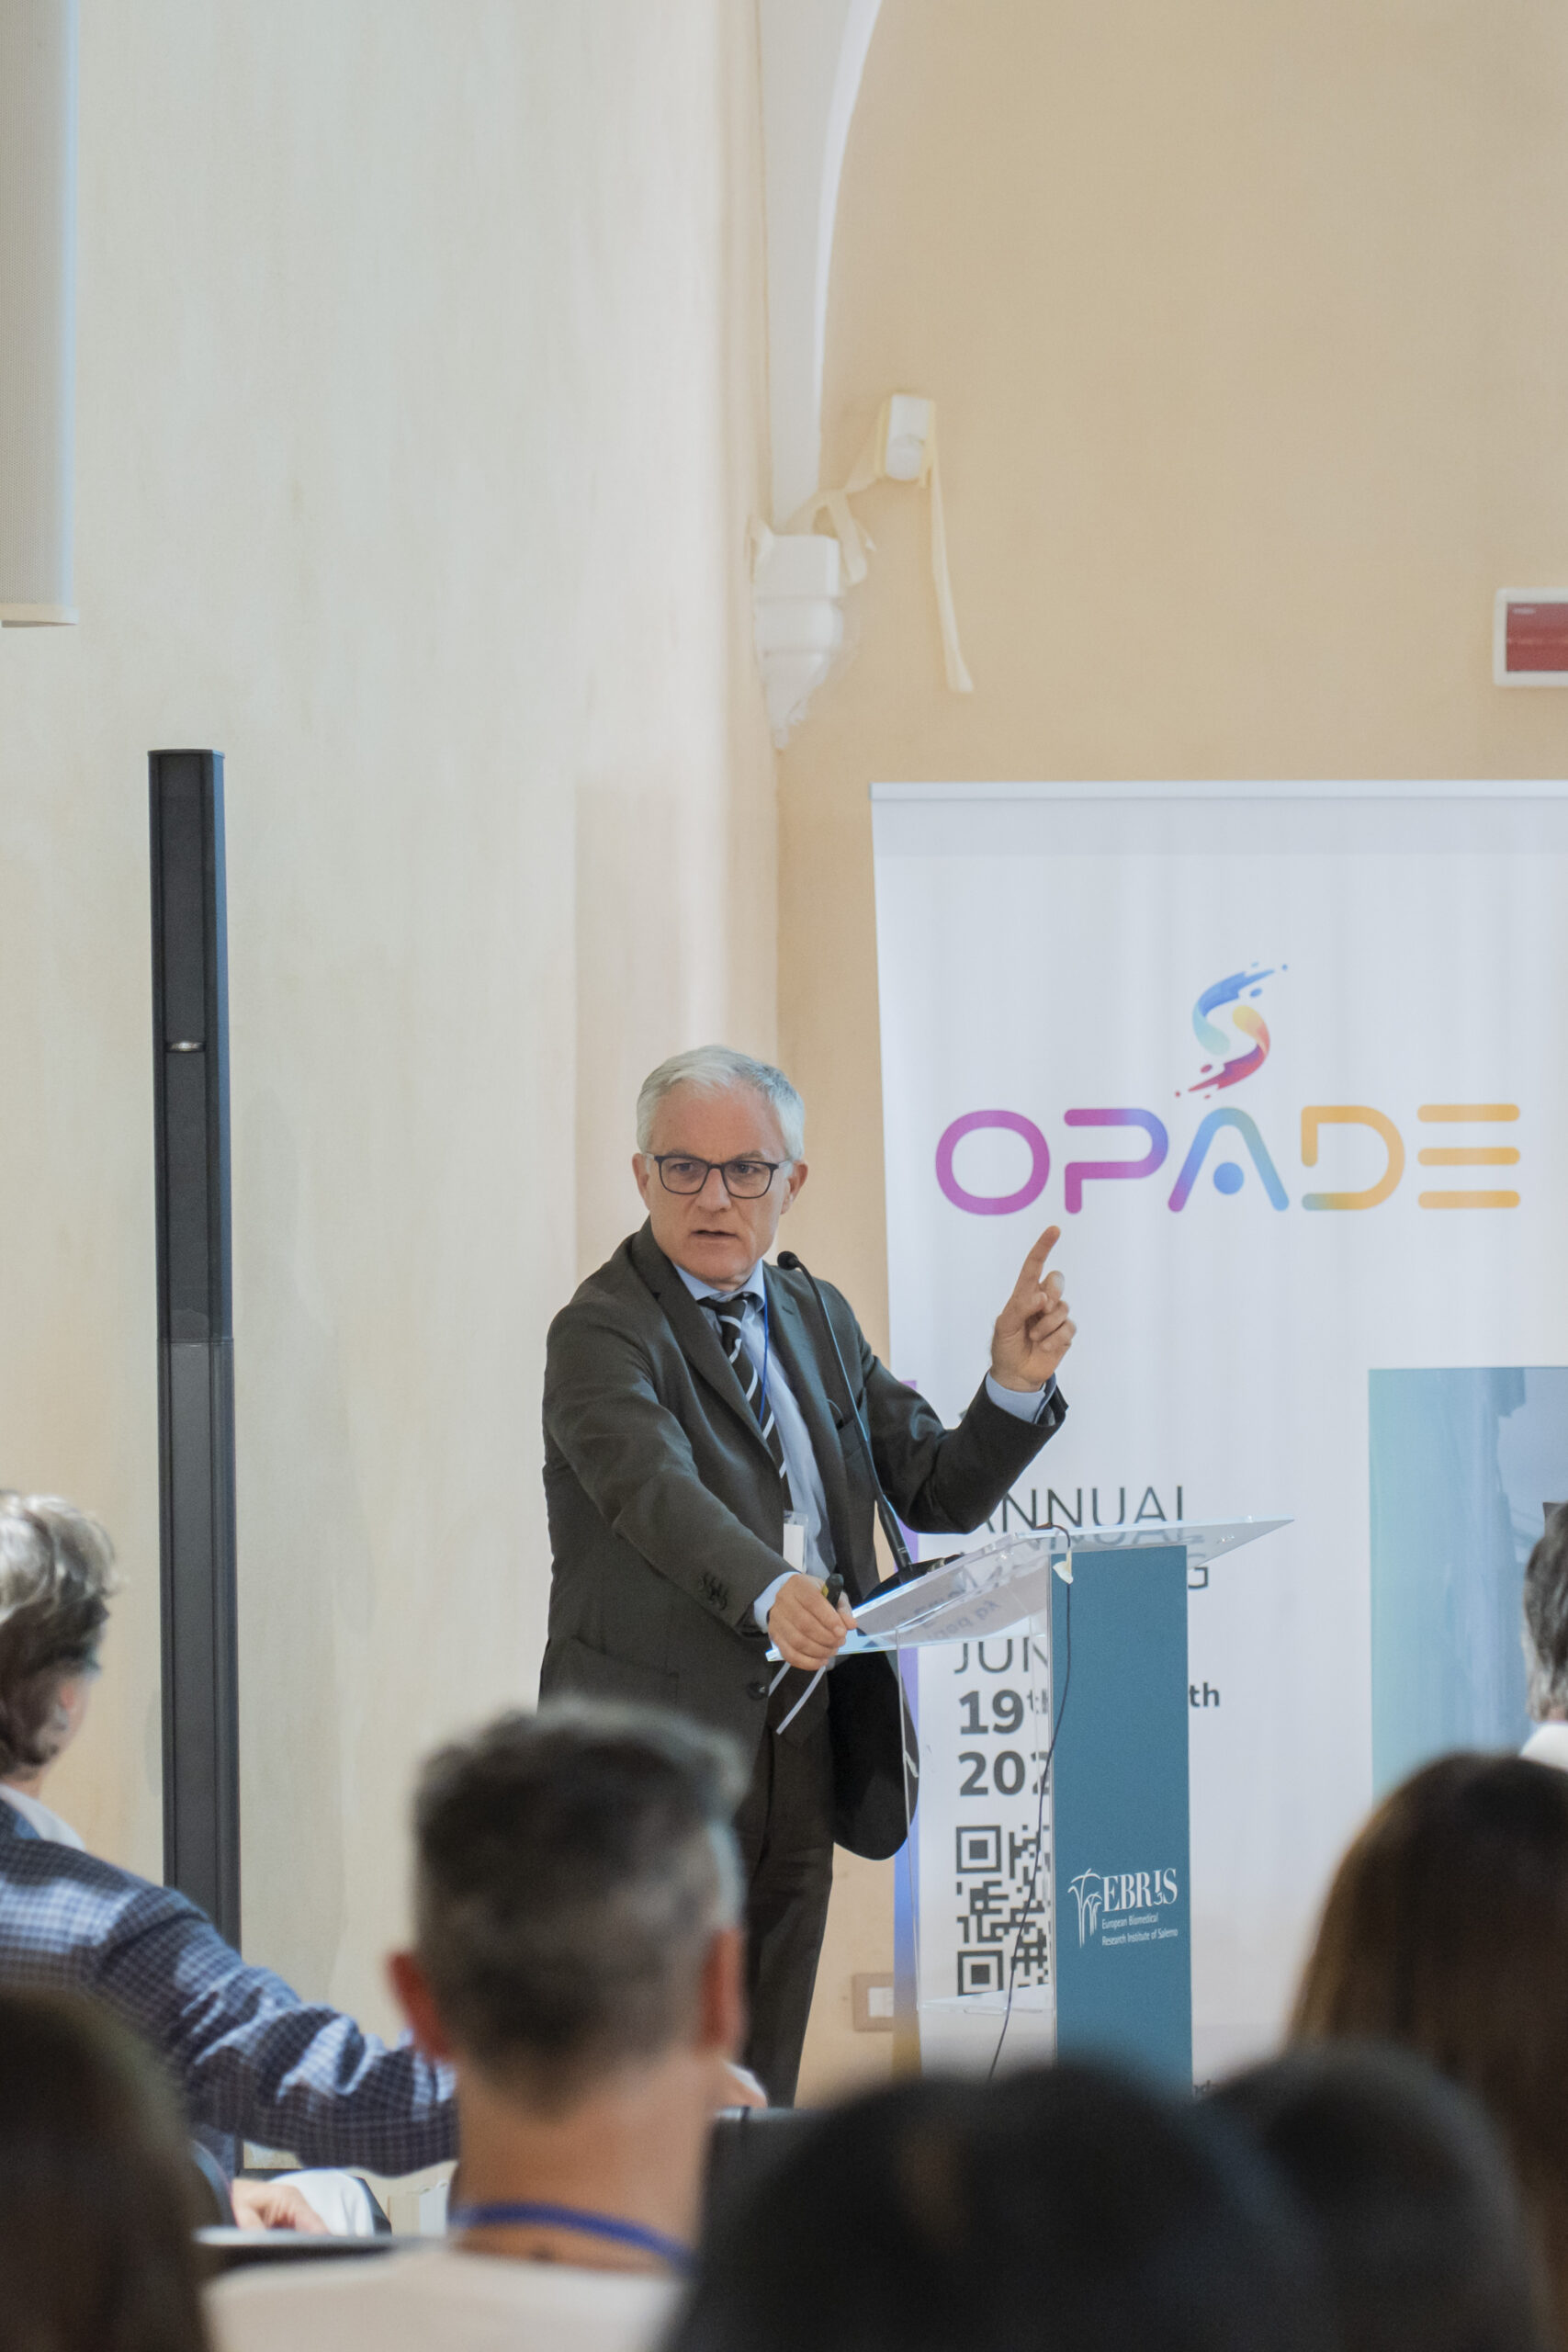 Salerno: Fondazione Ebris, trattamento depressione maggiore, I meeting internazionale progetto “OPADE”